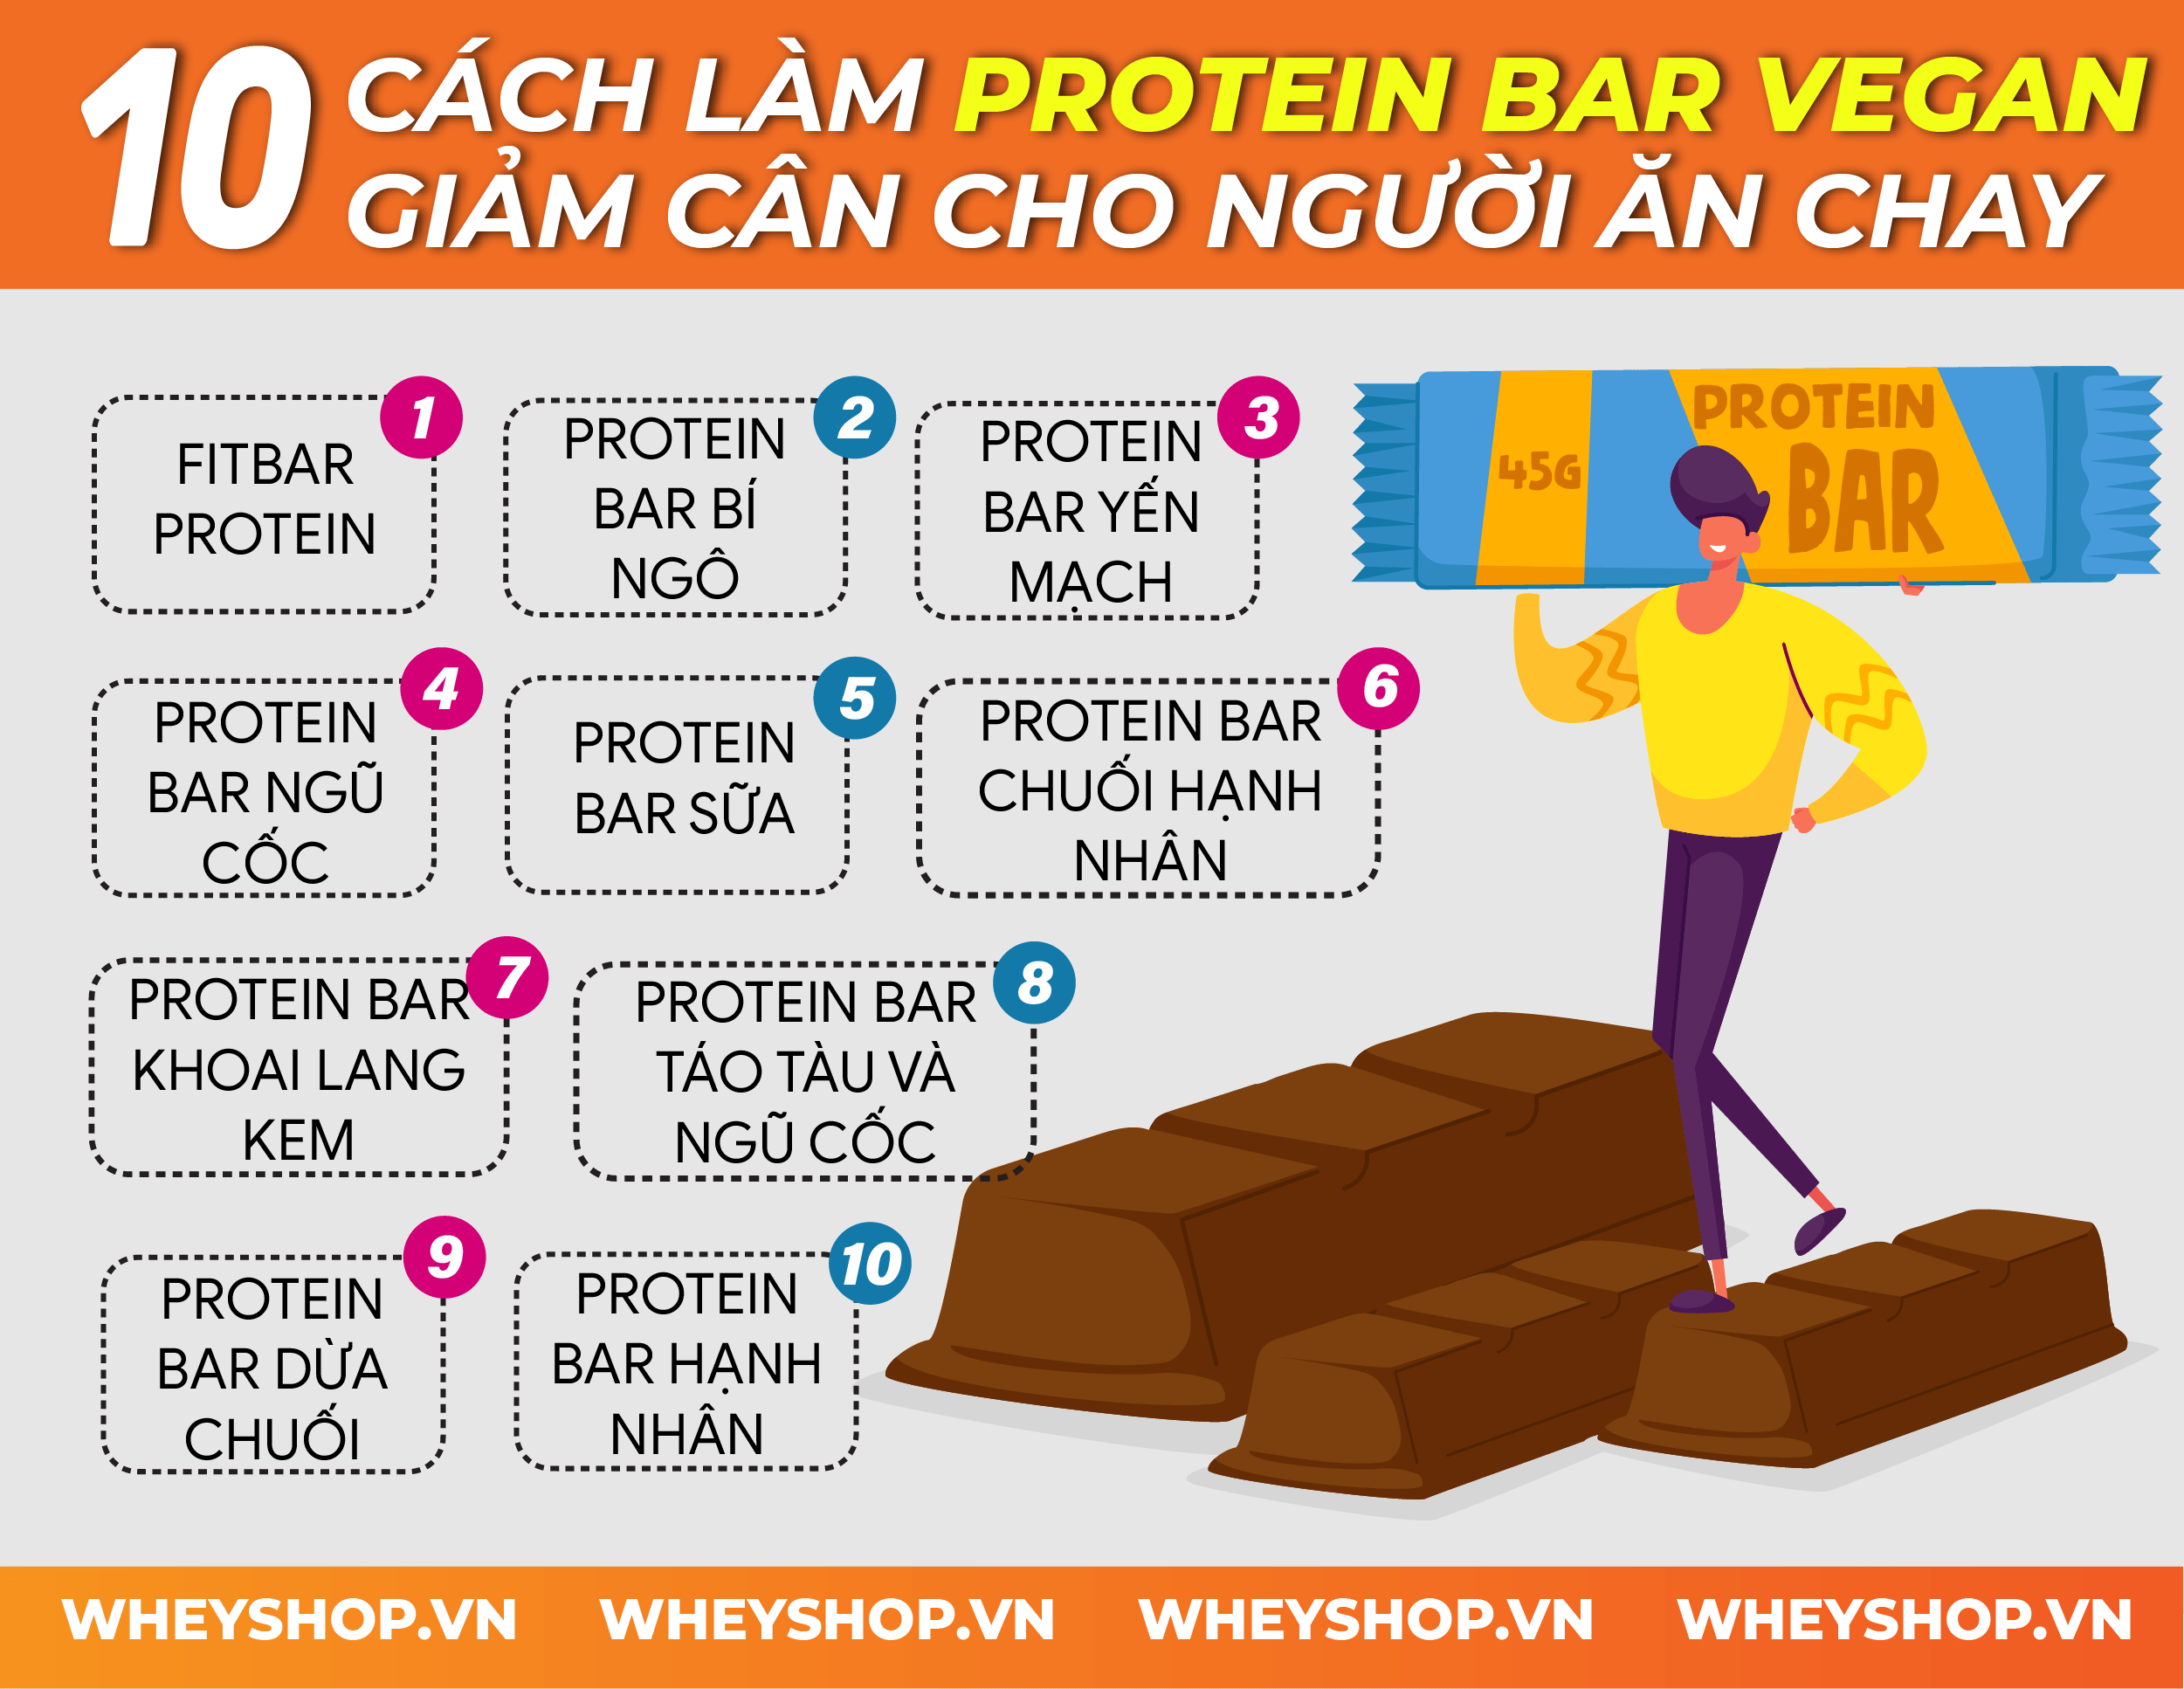 Nếu bạn đang băn khoăn tìm cách chế biến Protein Bar Vegan thì hãy cùng WheyShop tham khảo ngay 10 cách làm Protein Bar Vegan đơn giản hiệu quả...